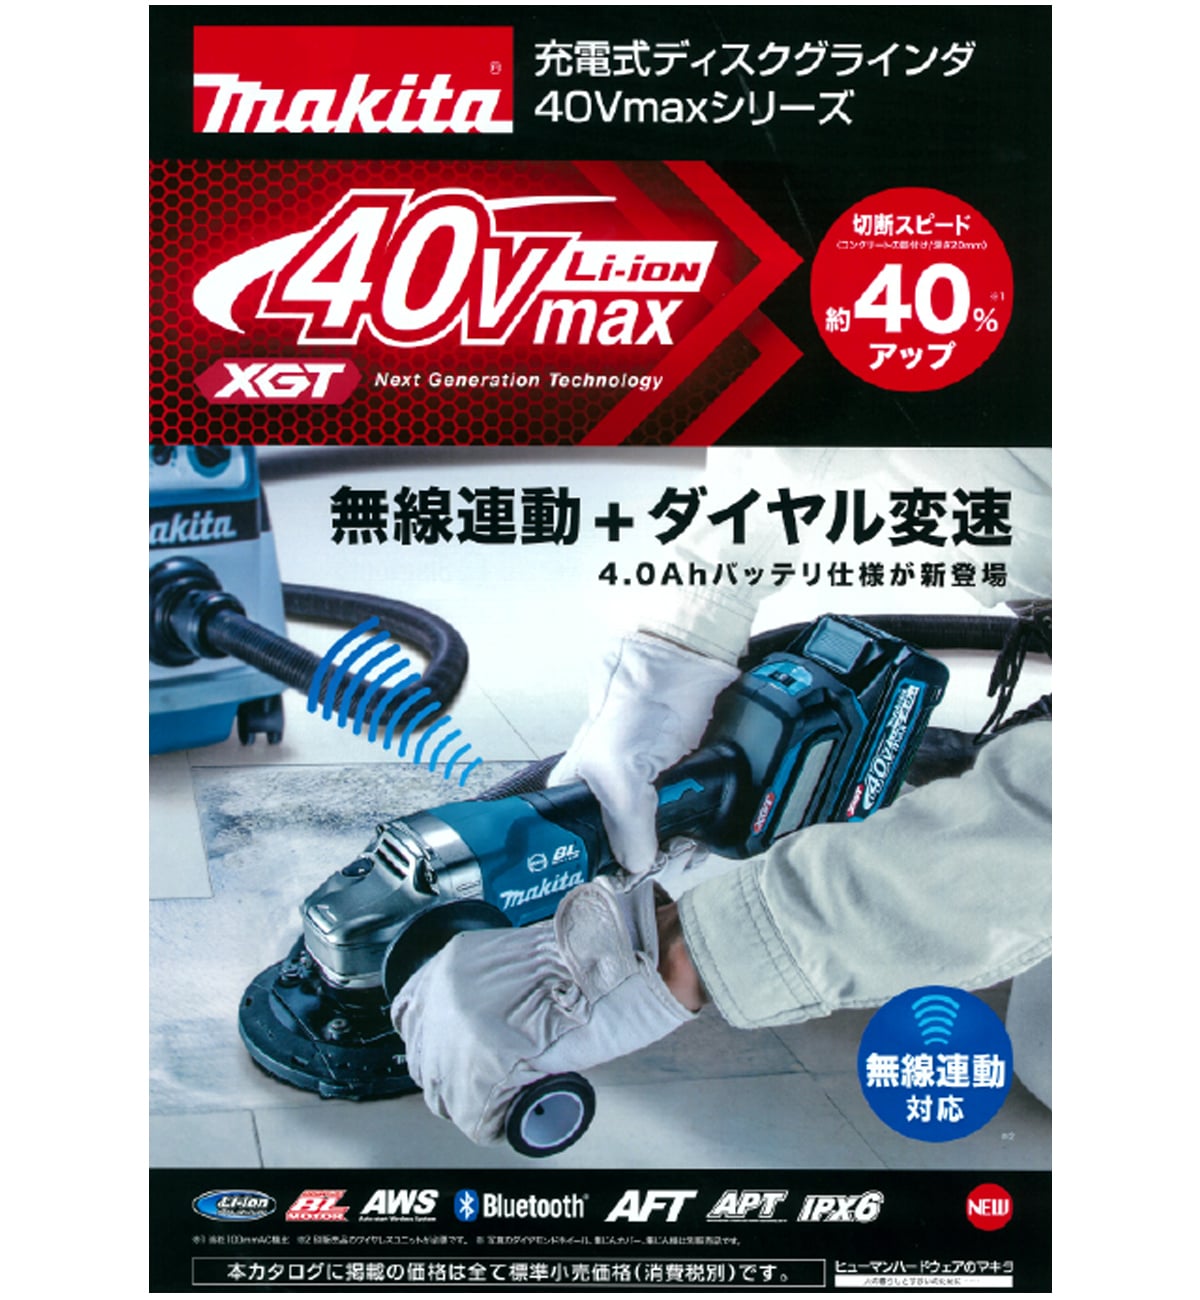 マキタ GA018GRMX 40Vmax充電式ディスクグラインダ125mm ウエダ金物【公式サイト】